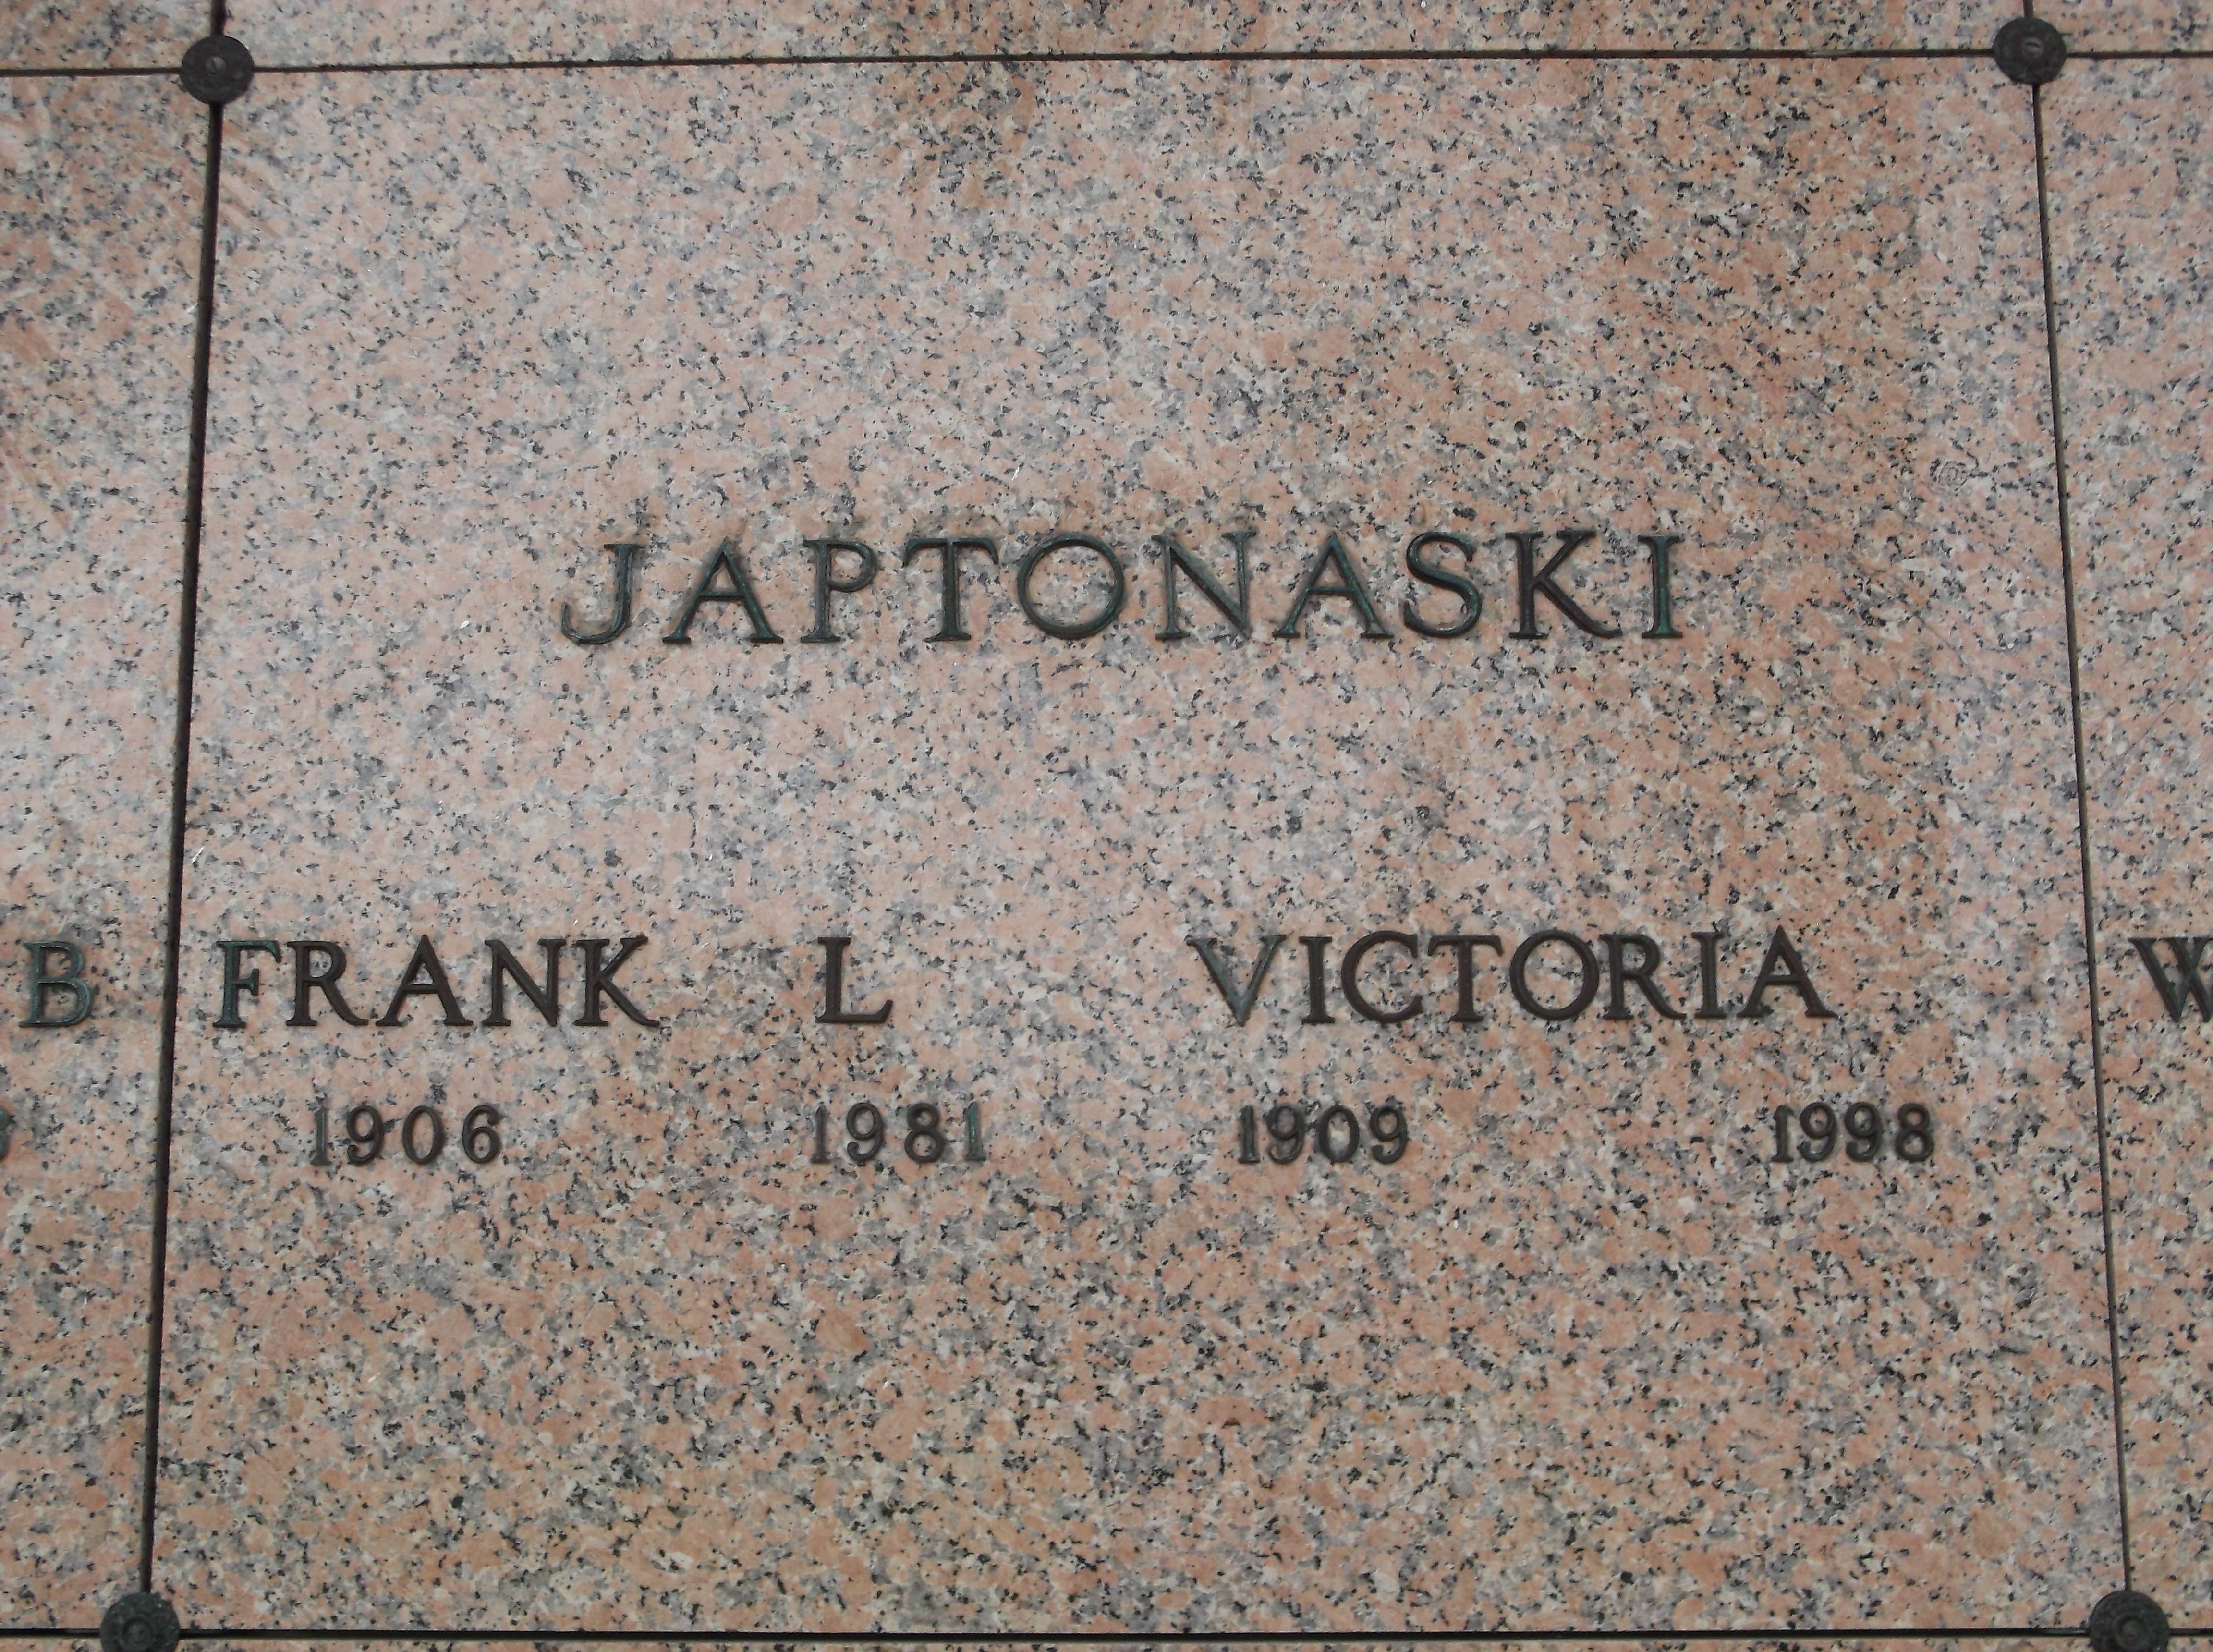 Frank L Japtonaski